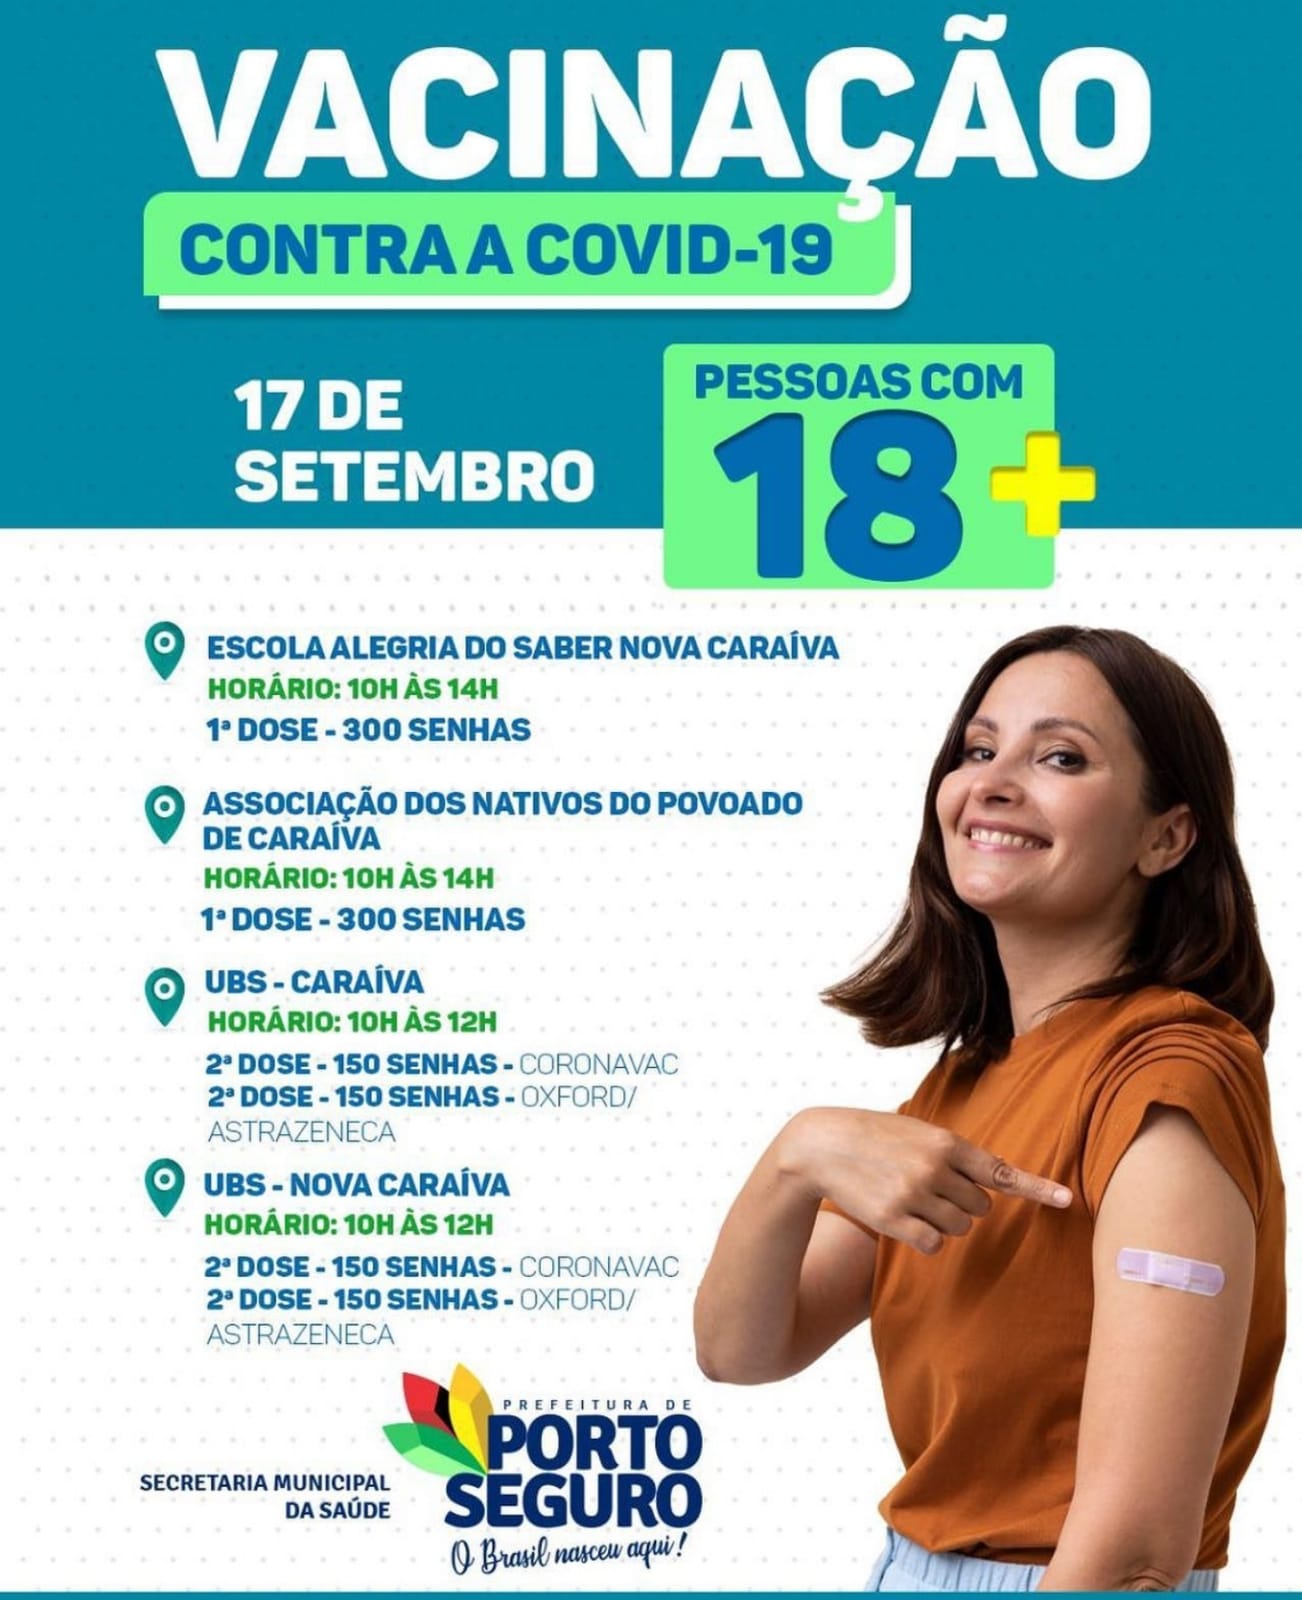 Porto Seguro: Cronograma de Vacinação contra a Covid-19 (17 de SETEMBRO) 5